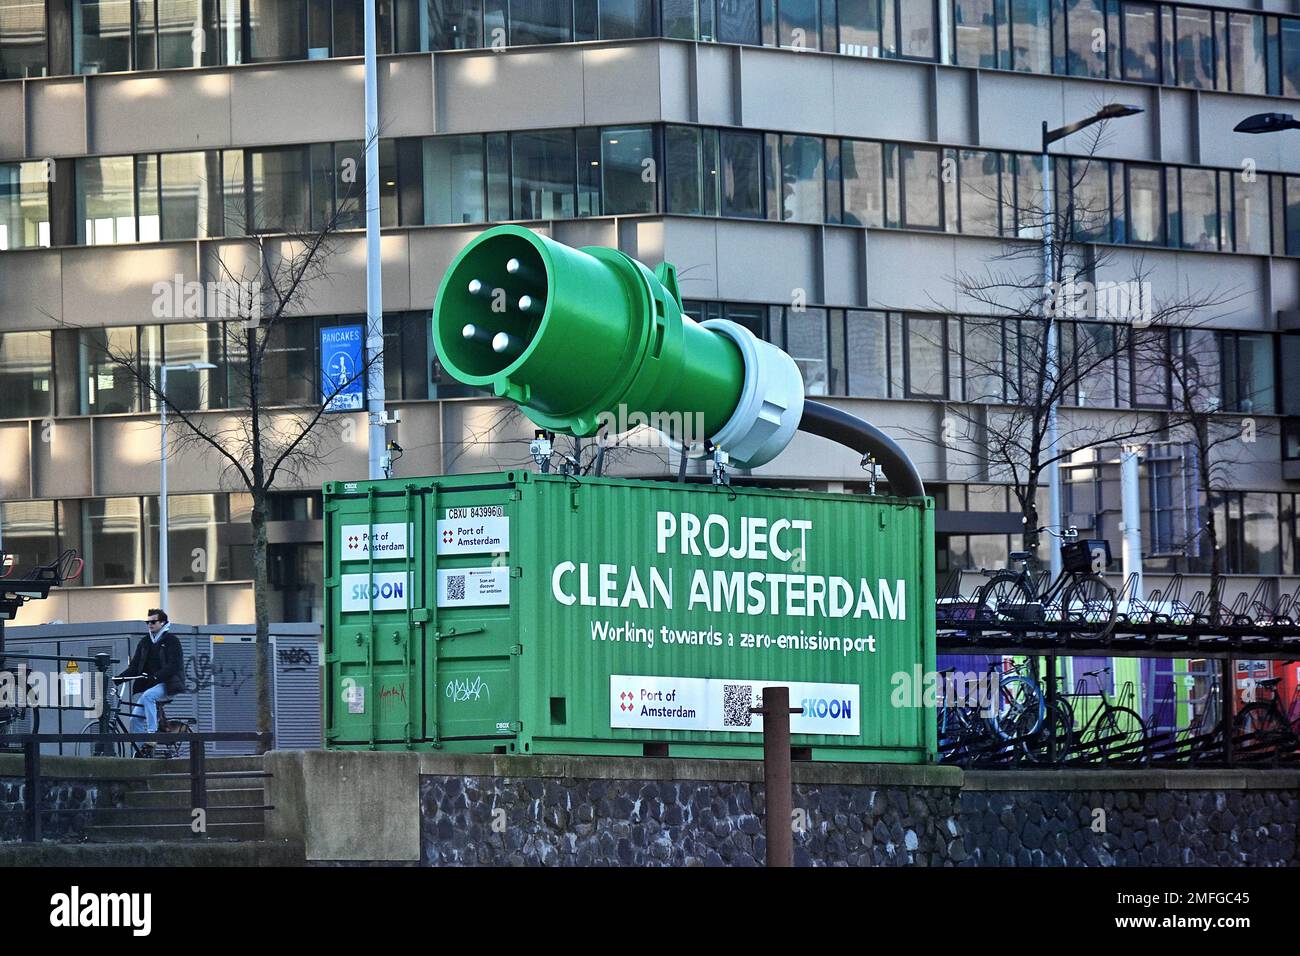 Paesi Bassi, Amsterdam: Installazione pubblicitaria per il “Project Clean Amsterdam”, che rappresenta una spina verde gigante su un contenitore. Questo ini Foto Stock